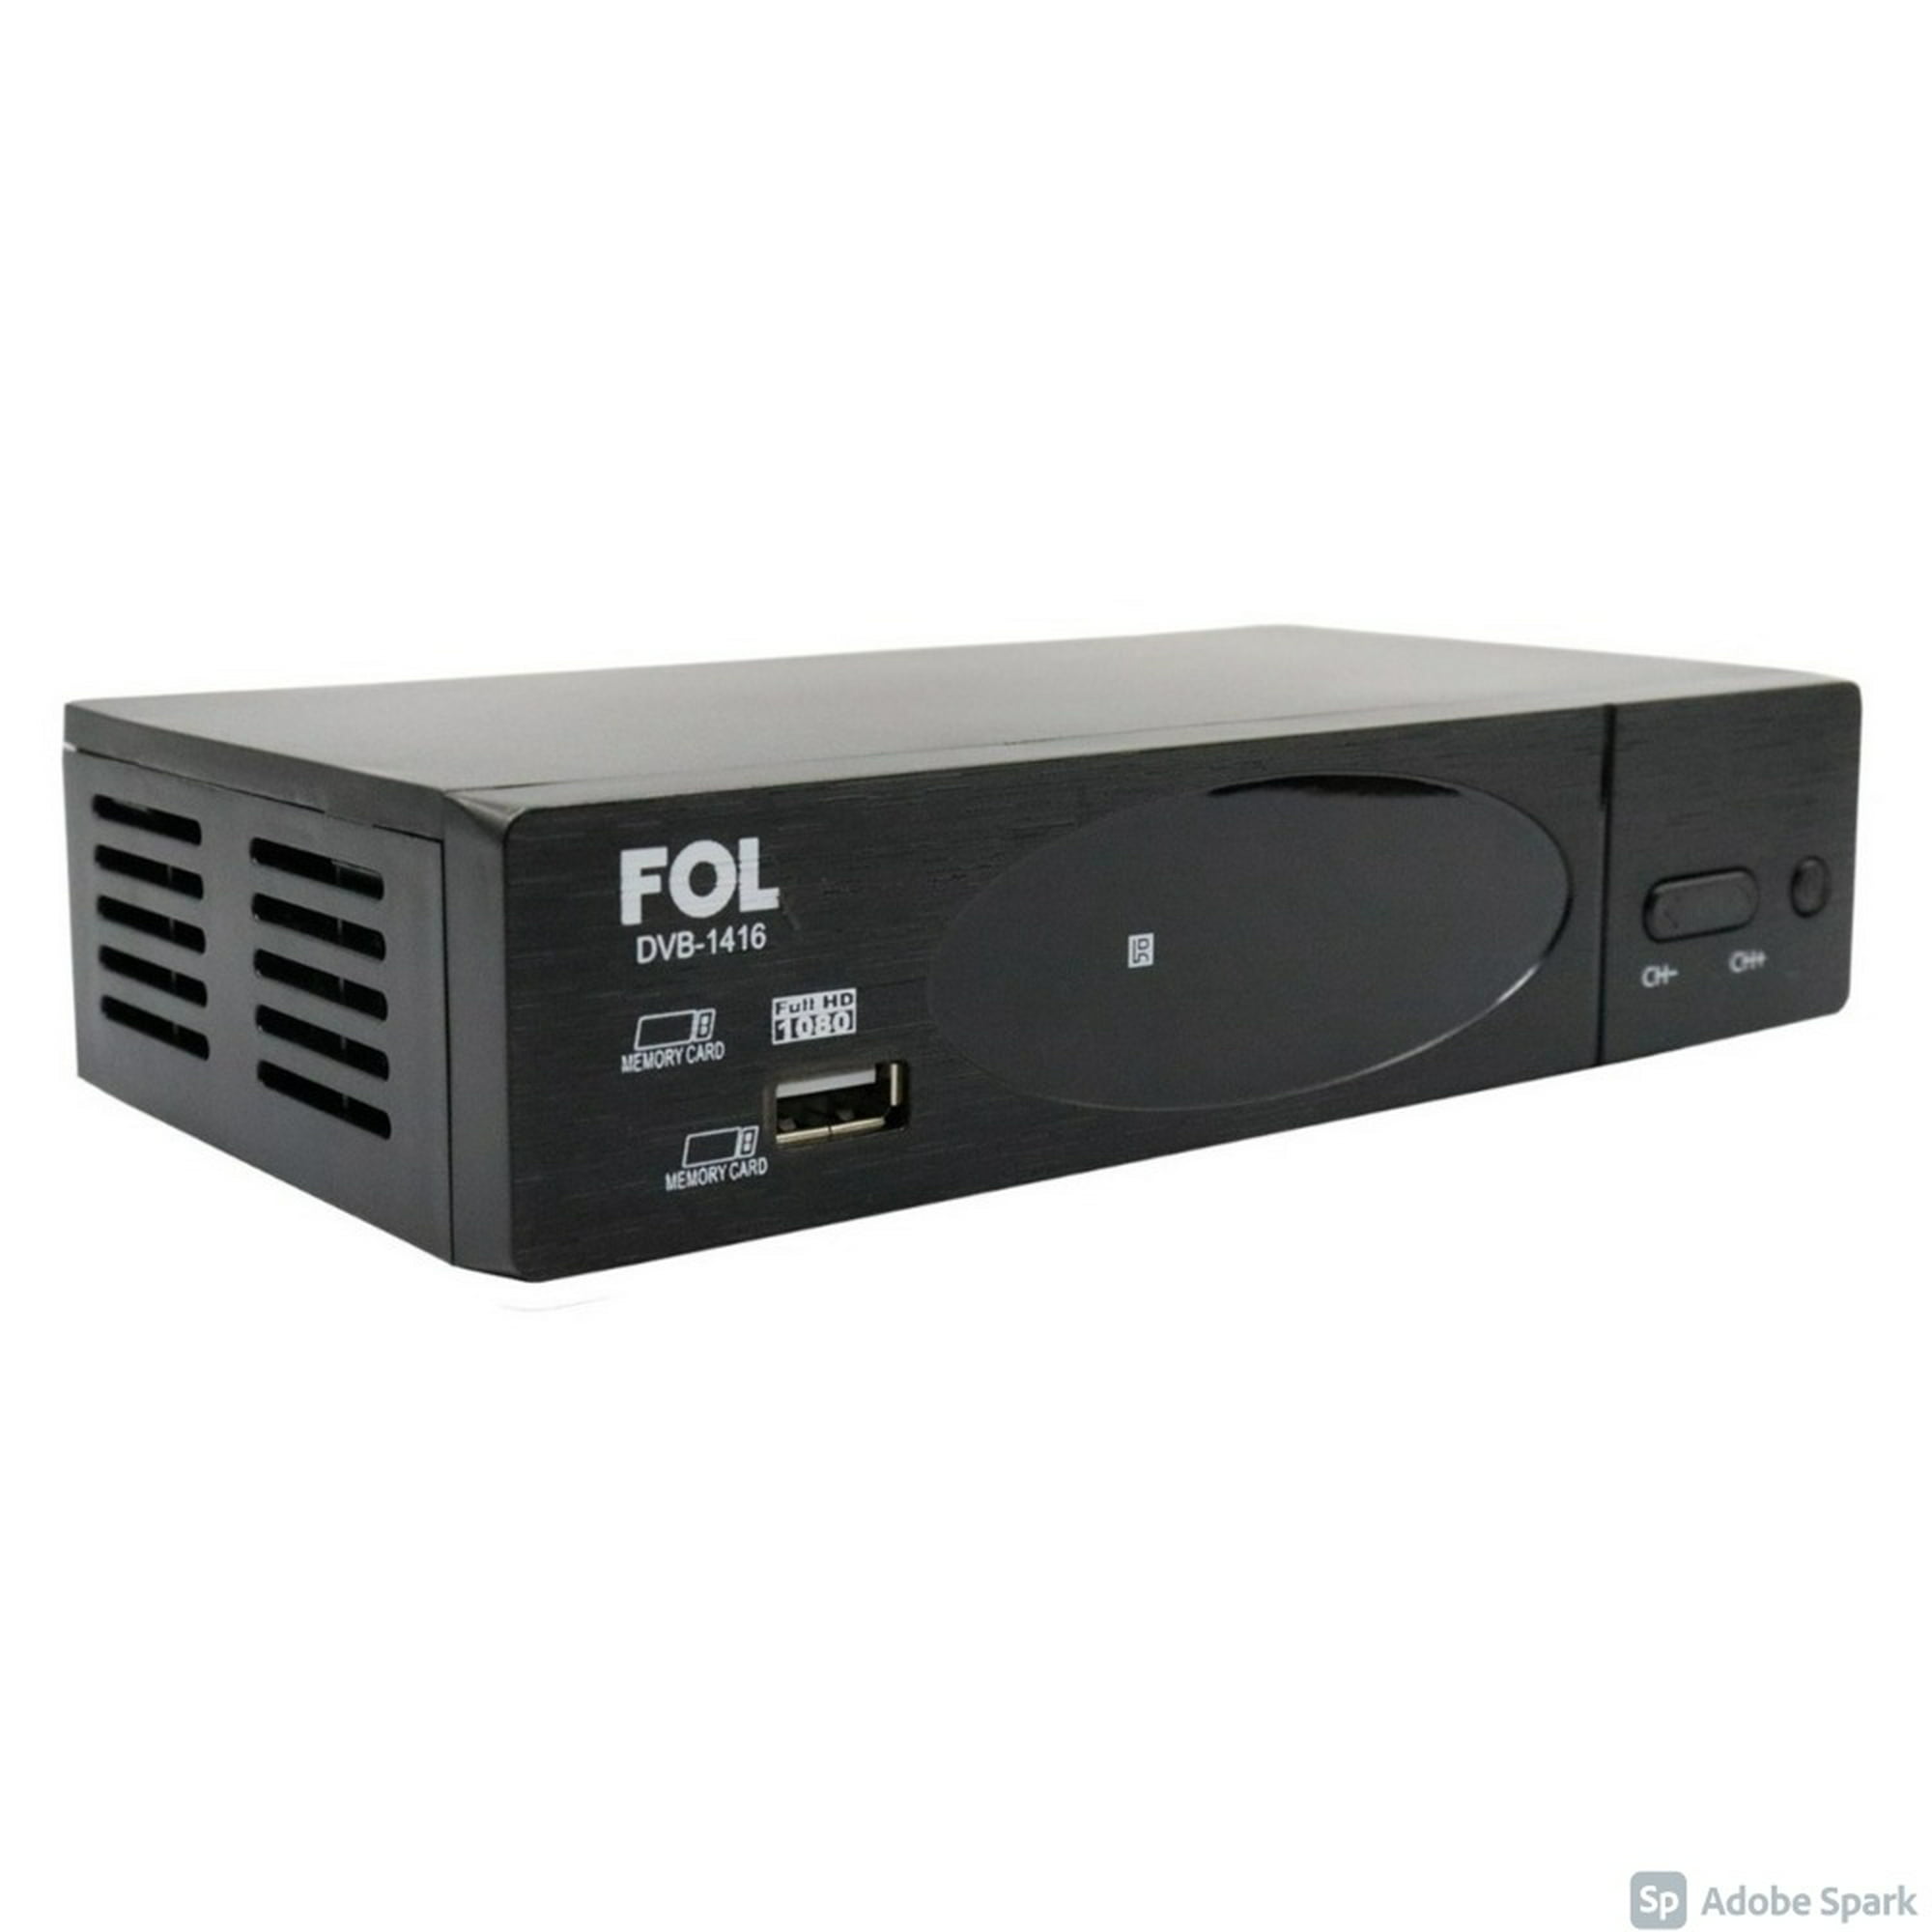 Decodificador FOL DVB1416 / Negro, Streaming, Pantallas, Audio y video, Todas, Categoría